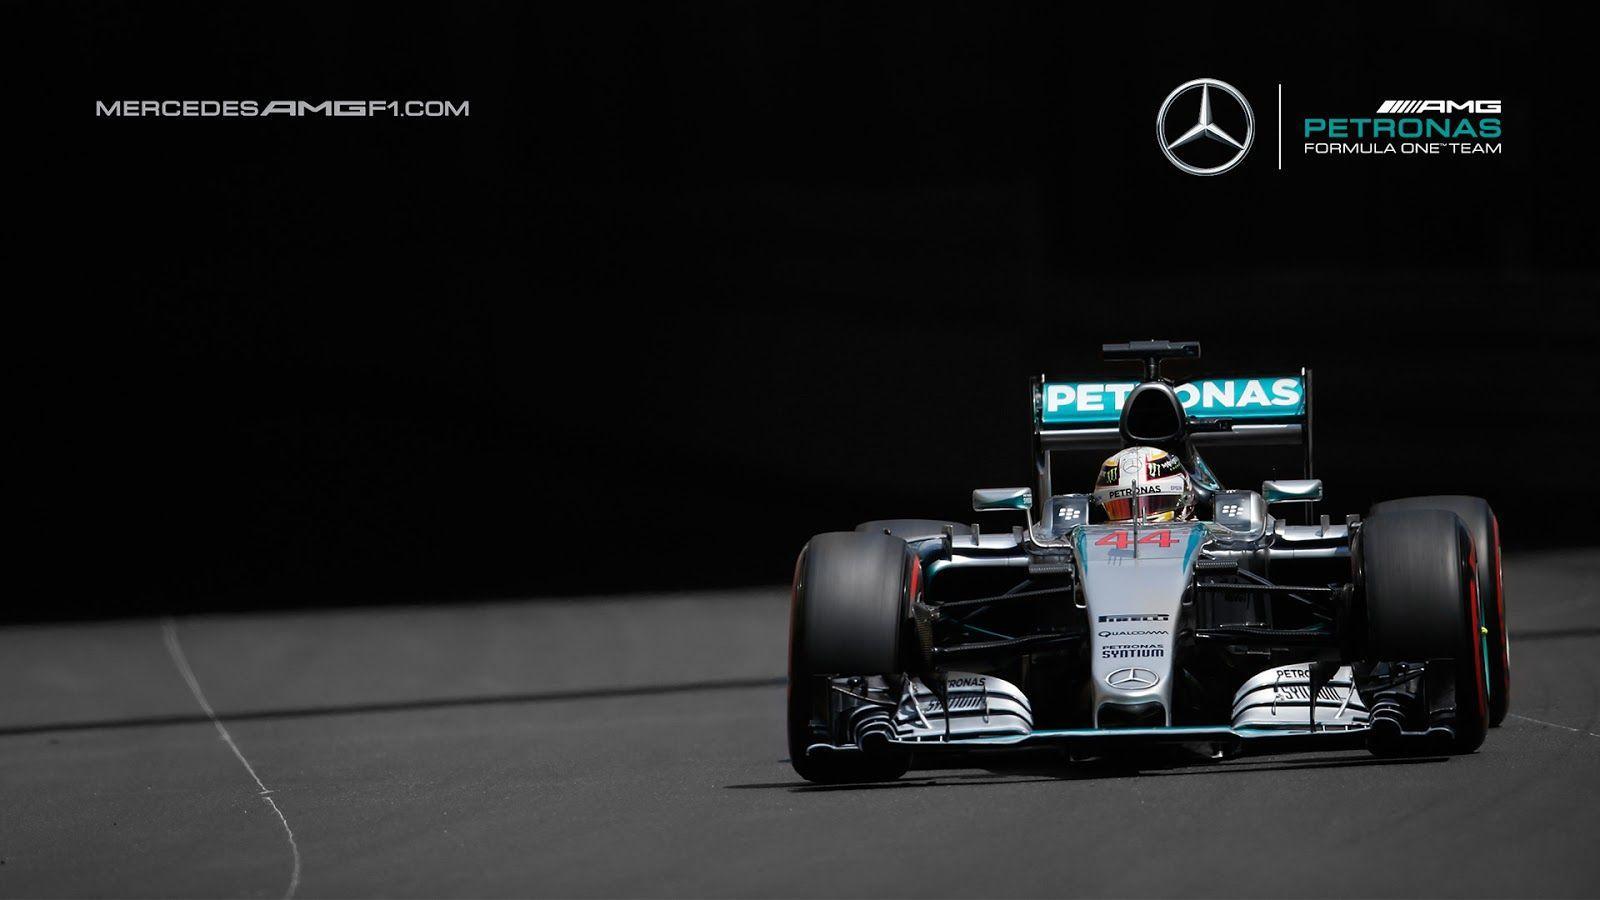 Mercedes AMG F1 Wallpaper Free .wallpaperaccess.com